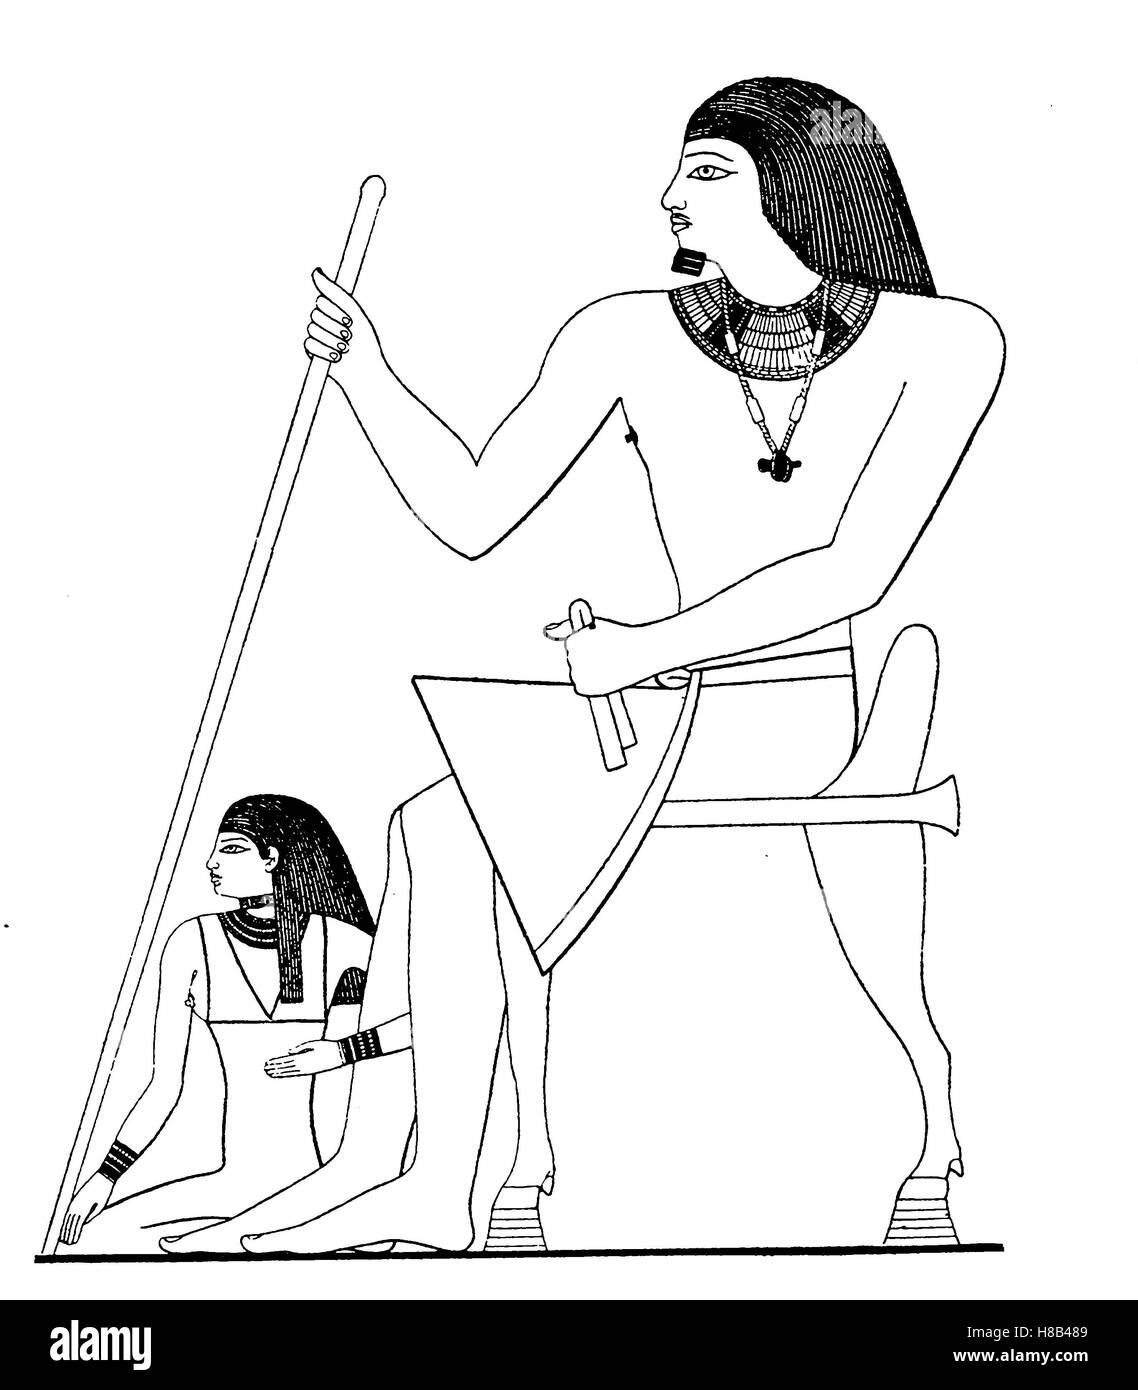 L'UNAS, King, 5 dynastie, l'Egypte, avec l'épouse. Costume de la période la plus ancienne de l'empire de Memphis, l'histoire de la mode, des costumes story Banque D'Images